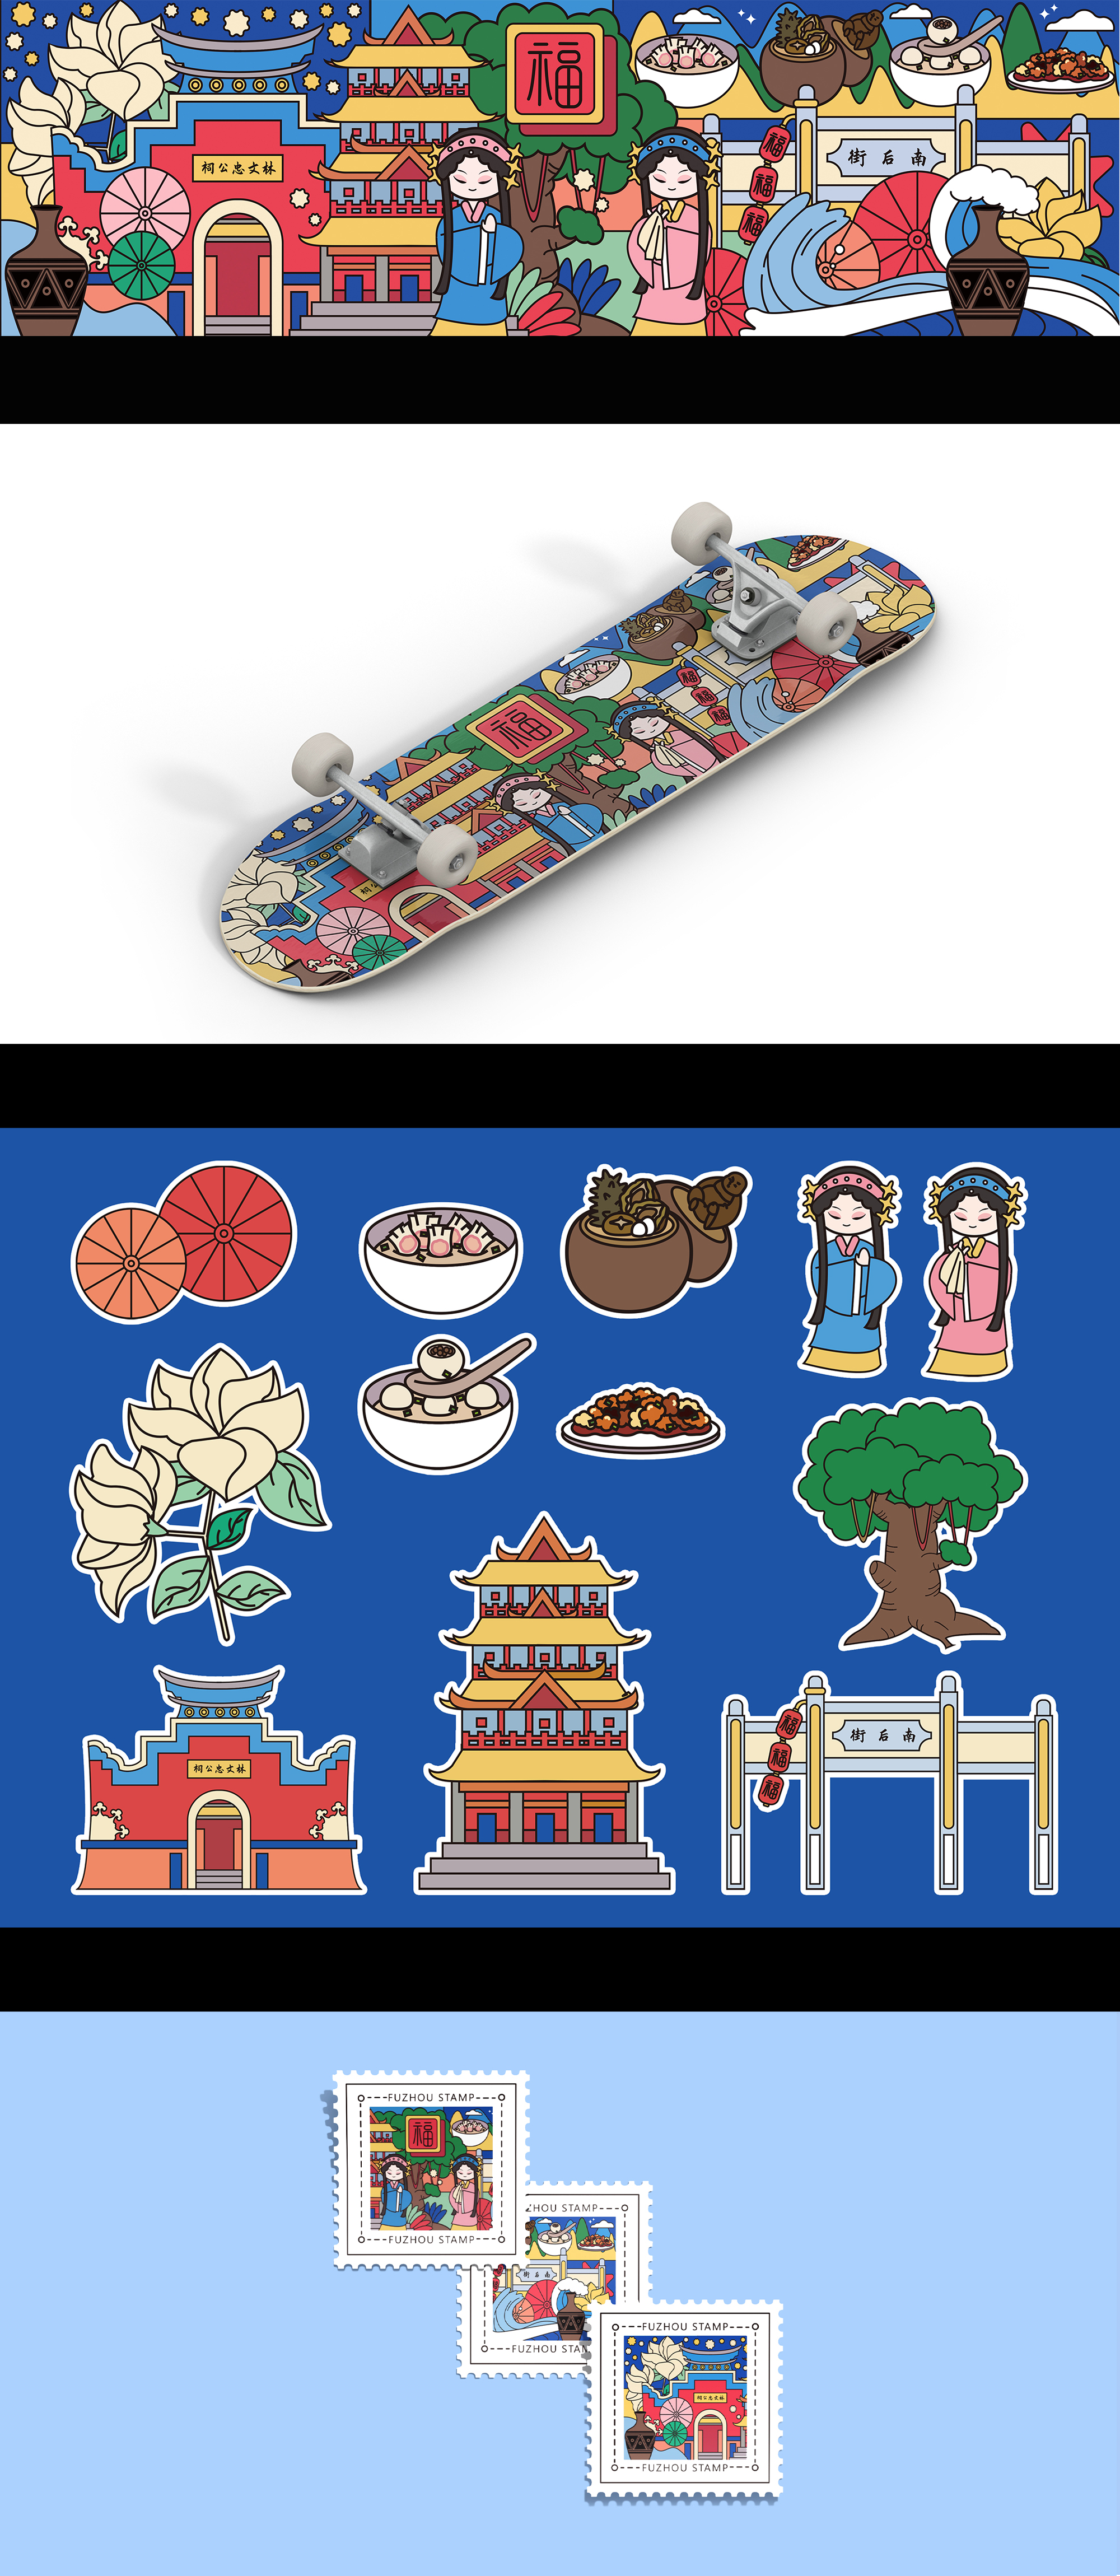 《印象福州》是以福州传统文化元素为主题的插画,包含福州著名景点